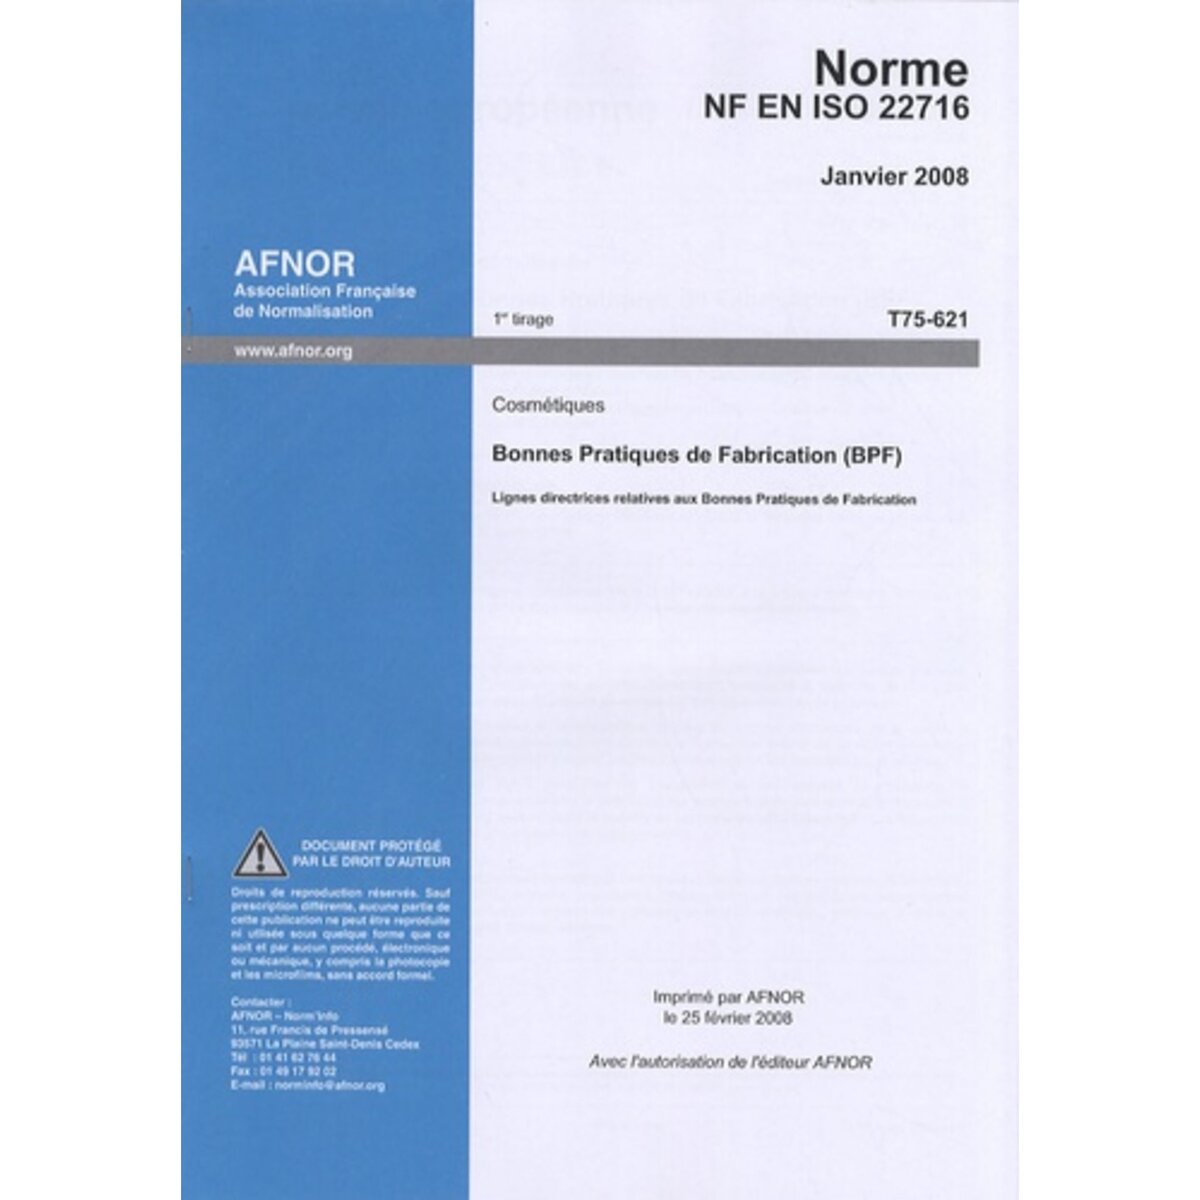  NORME NF EN ISO 22716 COSMETIQUES. LIGNES DIRECTRICES RELATIVES AUX BONNES PRATIQUES DE FABRICATION (BPF), AFNOR